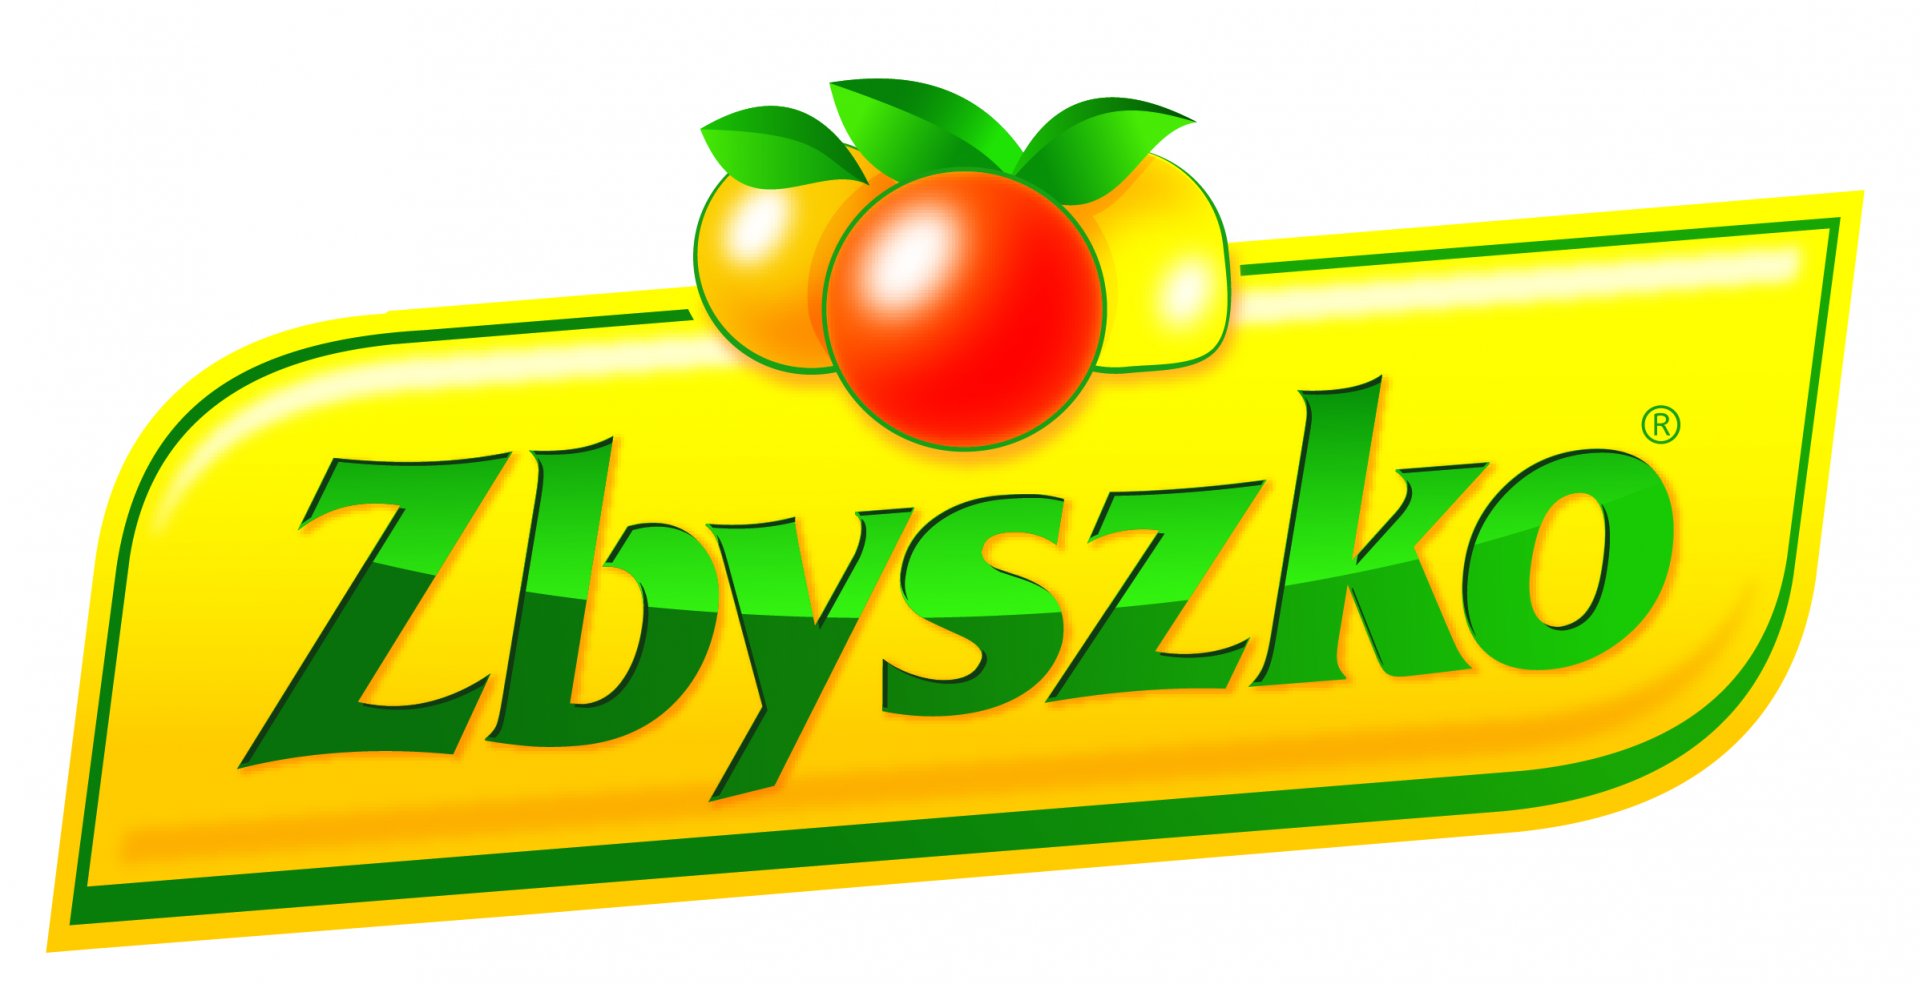 logo Zbyszko Company S.A.